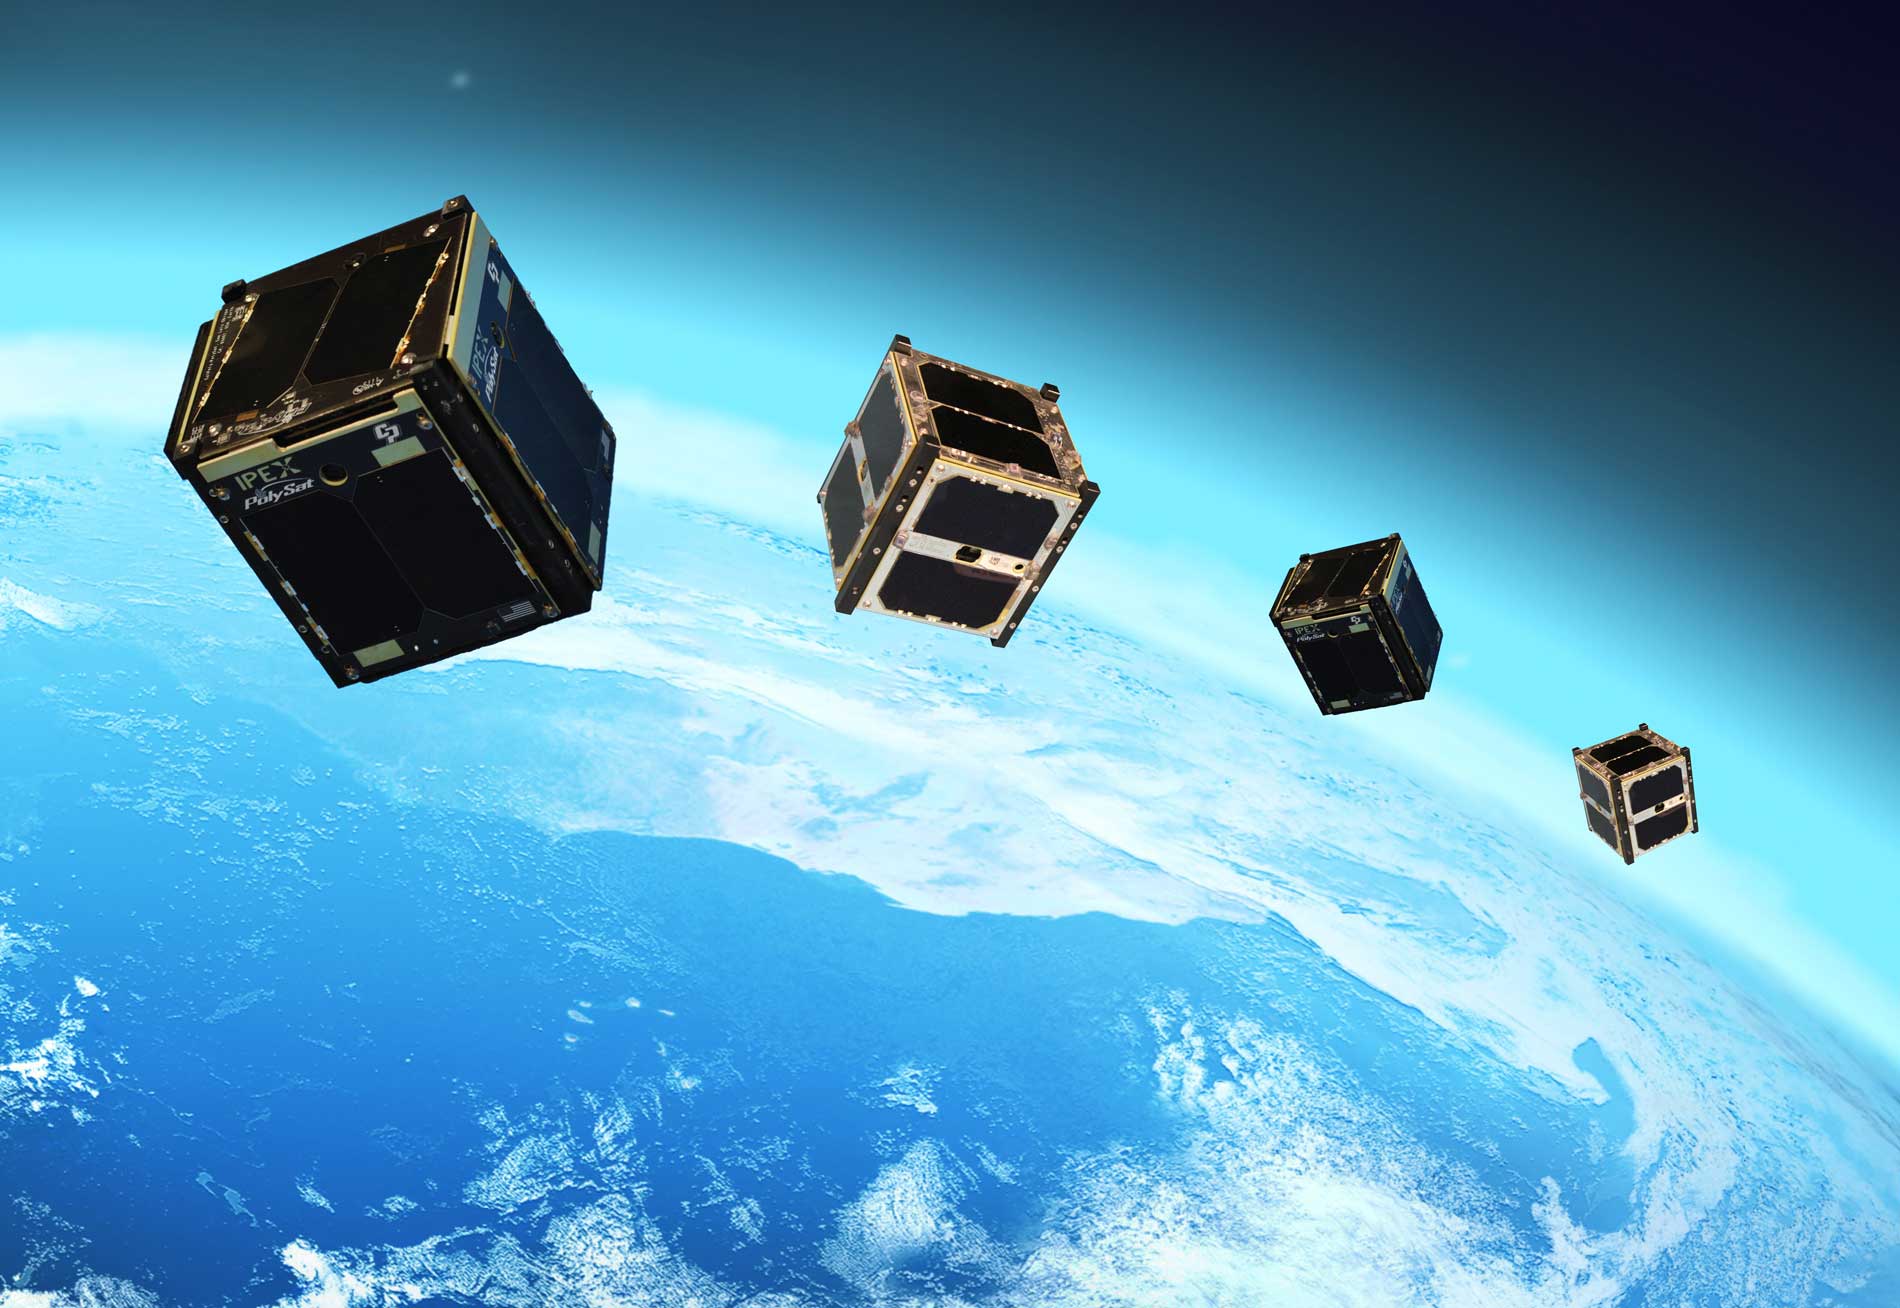 La Universidad de Sevilla anima a sus estudiantes a crear un satélite real con el programa CubeSat